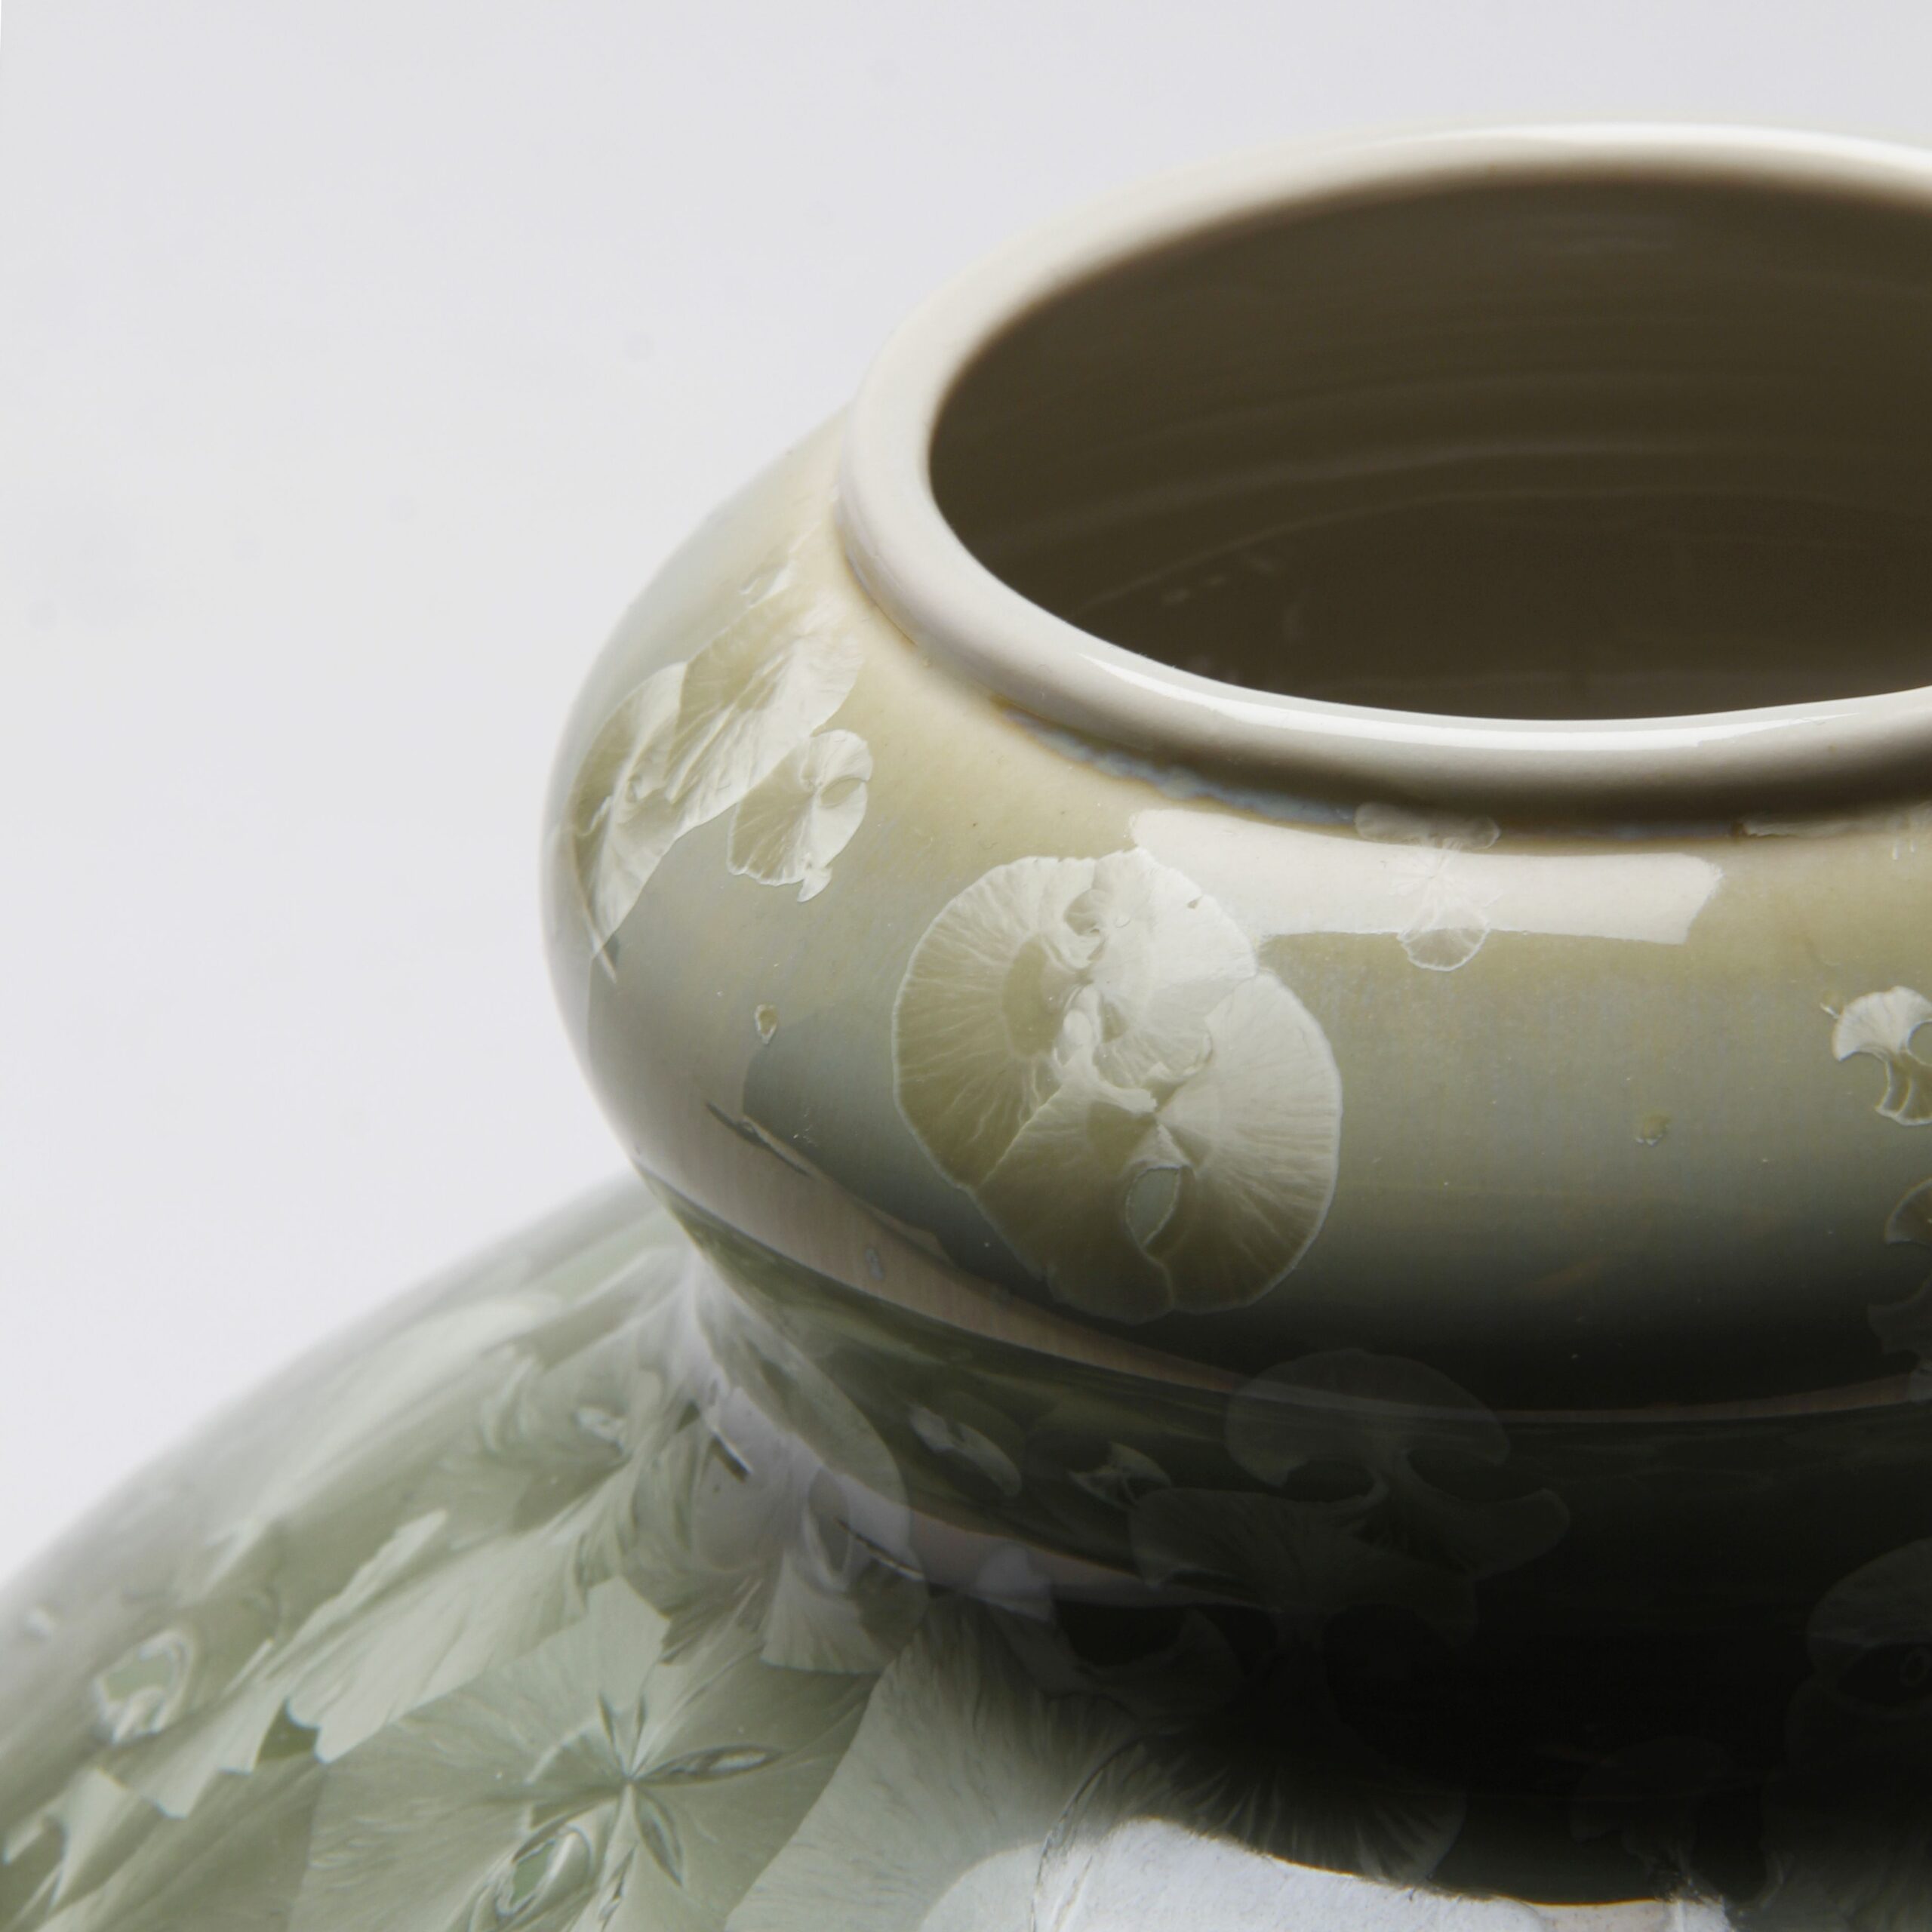 Yumiko Katsuya: Gold on Green Vase Product Image 3 of 4